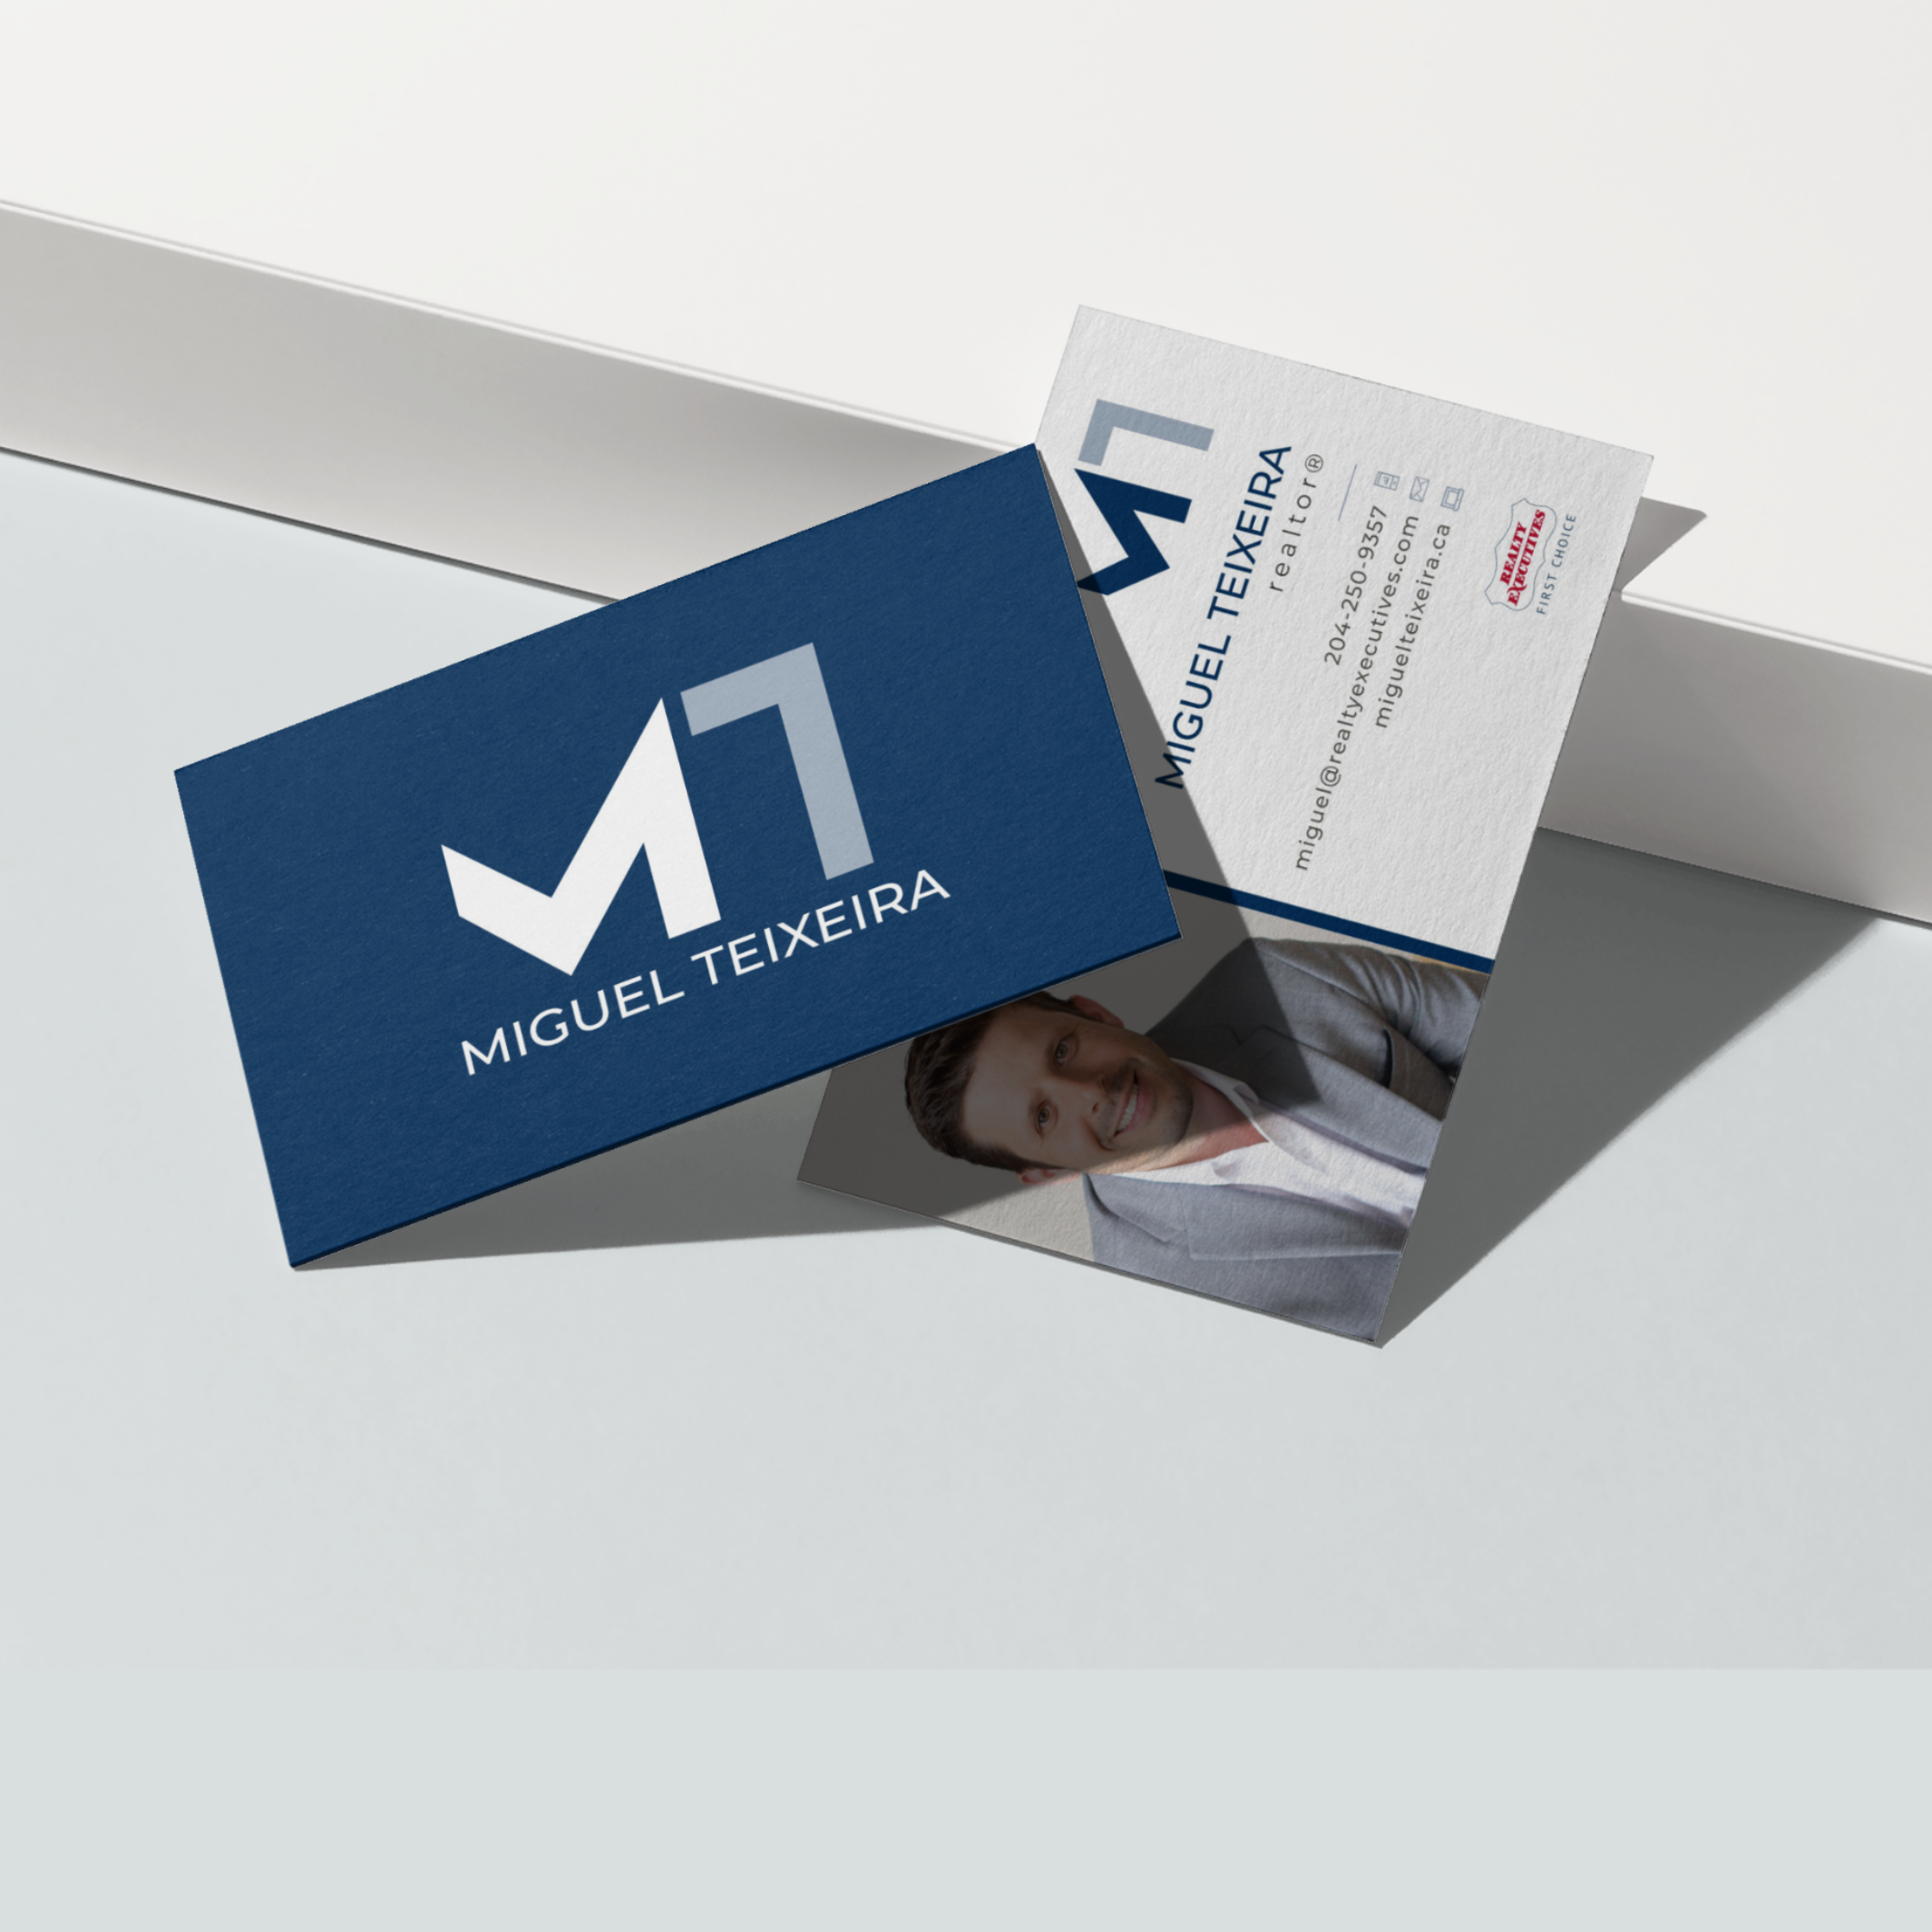 Miguel Teixeira Realtor business card design